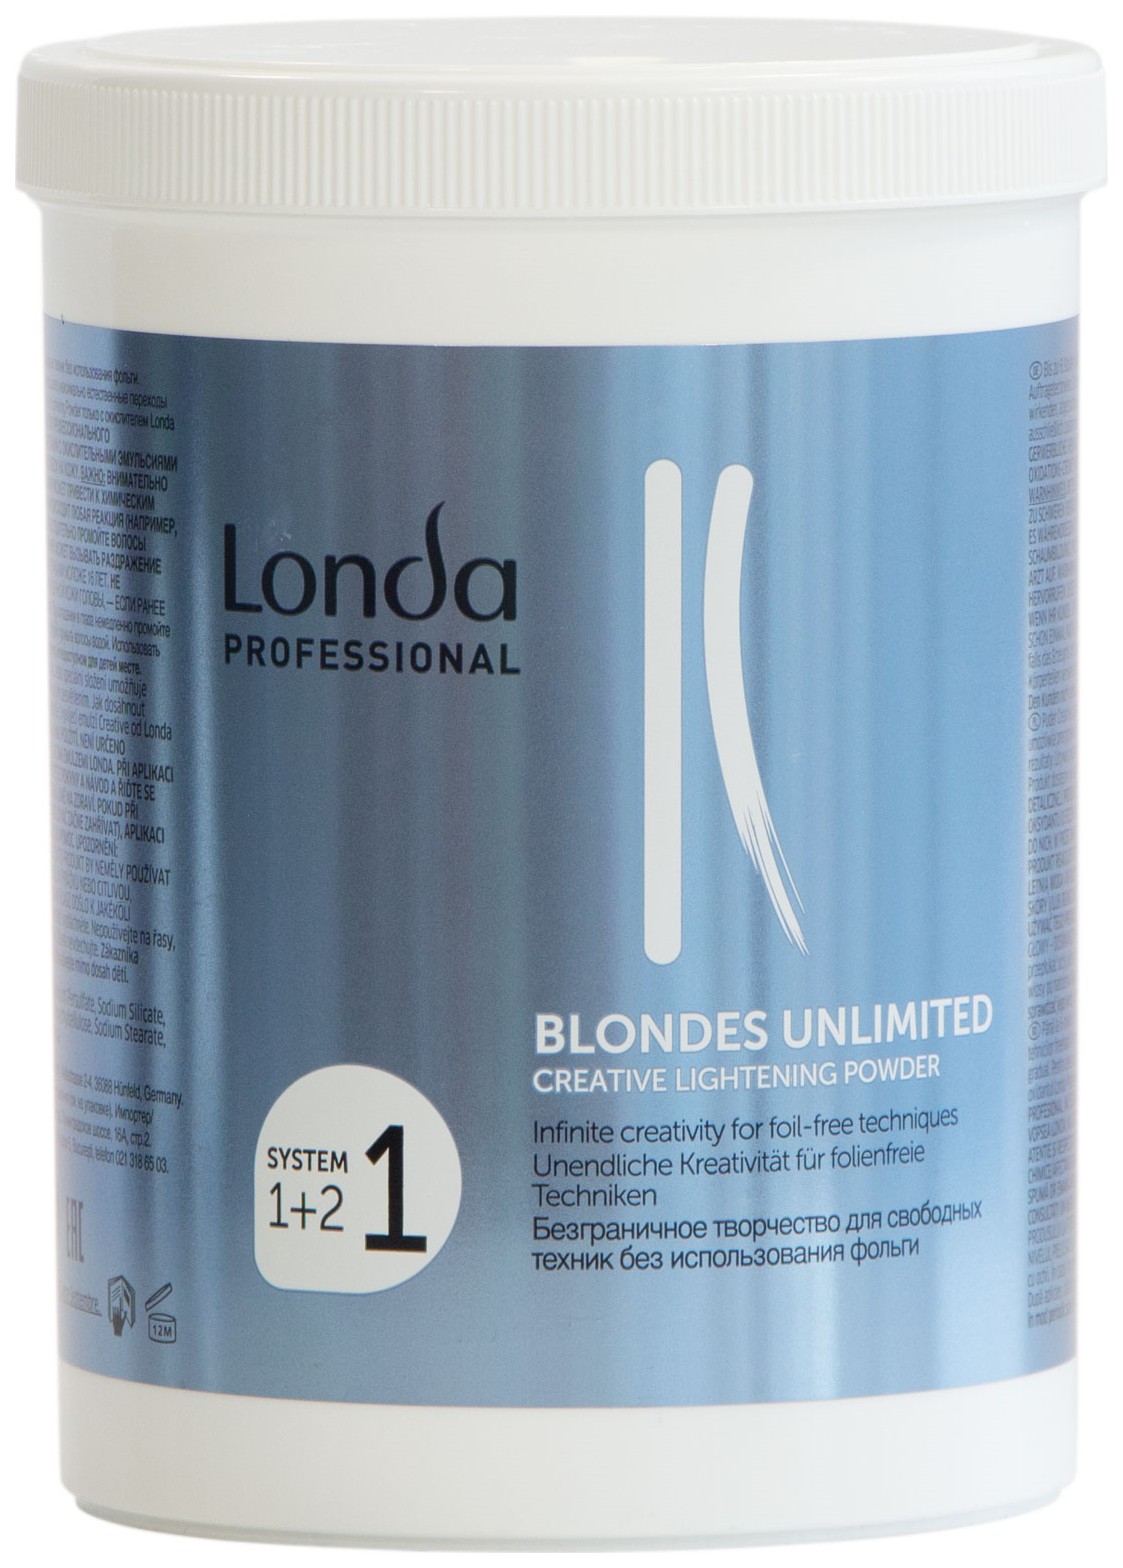 Какой порошок для осветления волос. Londa blondes Unlimited креативная осветляющая пудра 400 мл. Londa professional пудра для осветления. Blondes Unlimited креативная осветляющая пудра 400 мл. Londa professional осветляющий порошок.